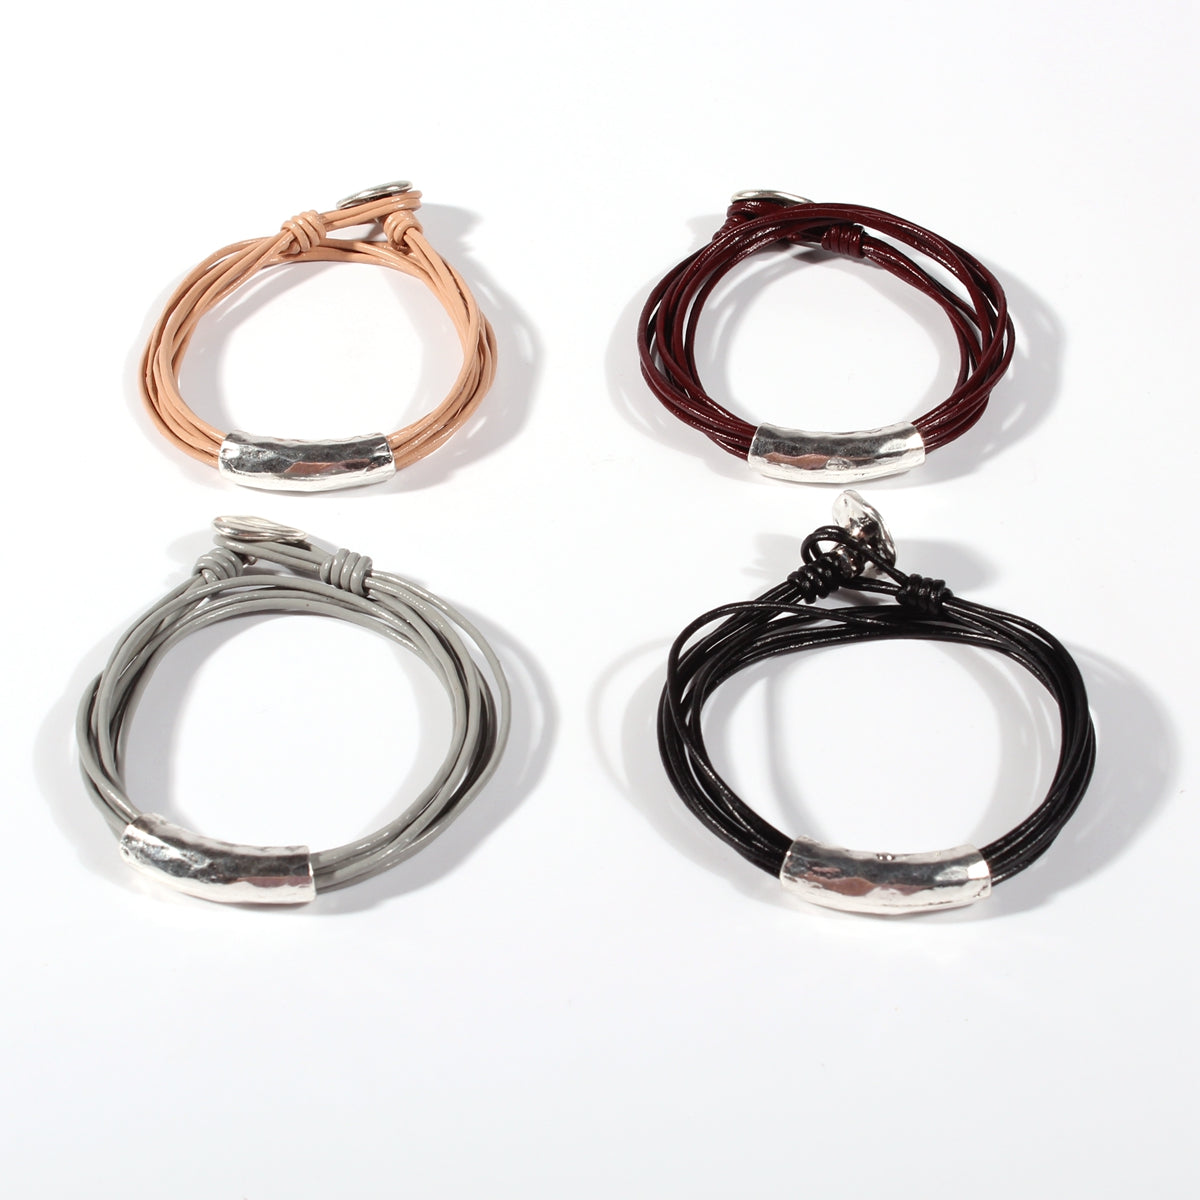 Genuine leather handmade women's bracelet MBR-06